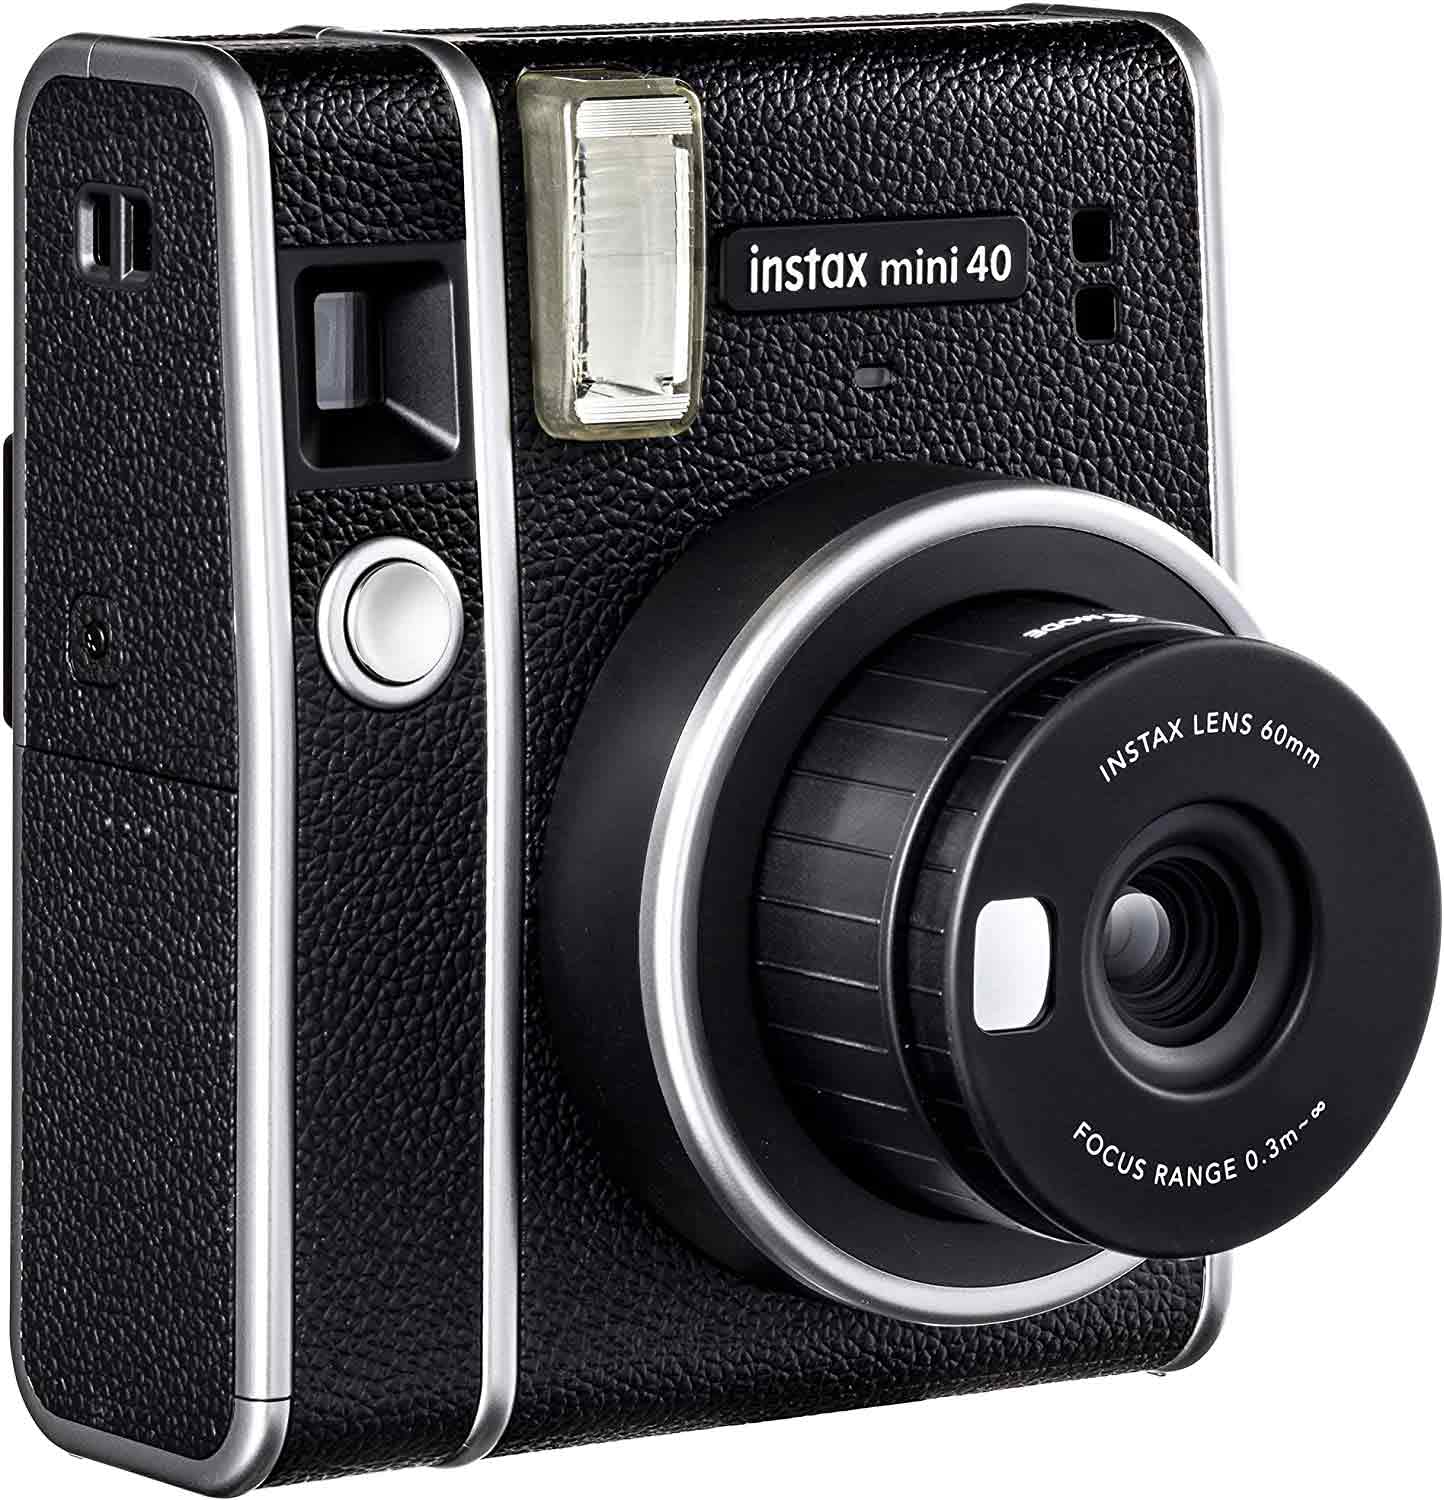 Mini Instax Fujifilm in Retro Style: Instax Mini 40 Instant Film Camera